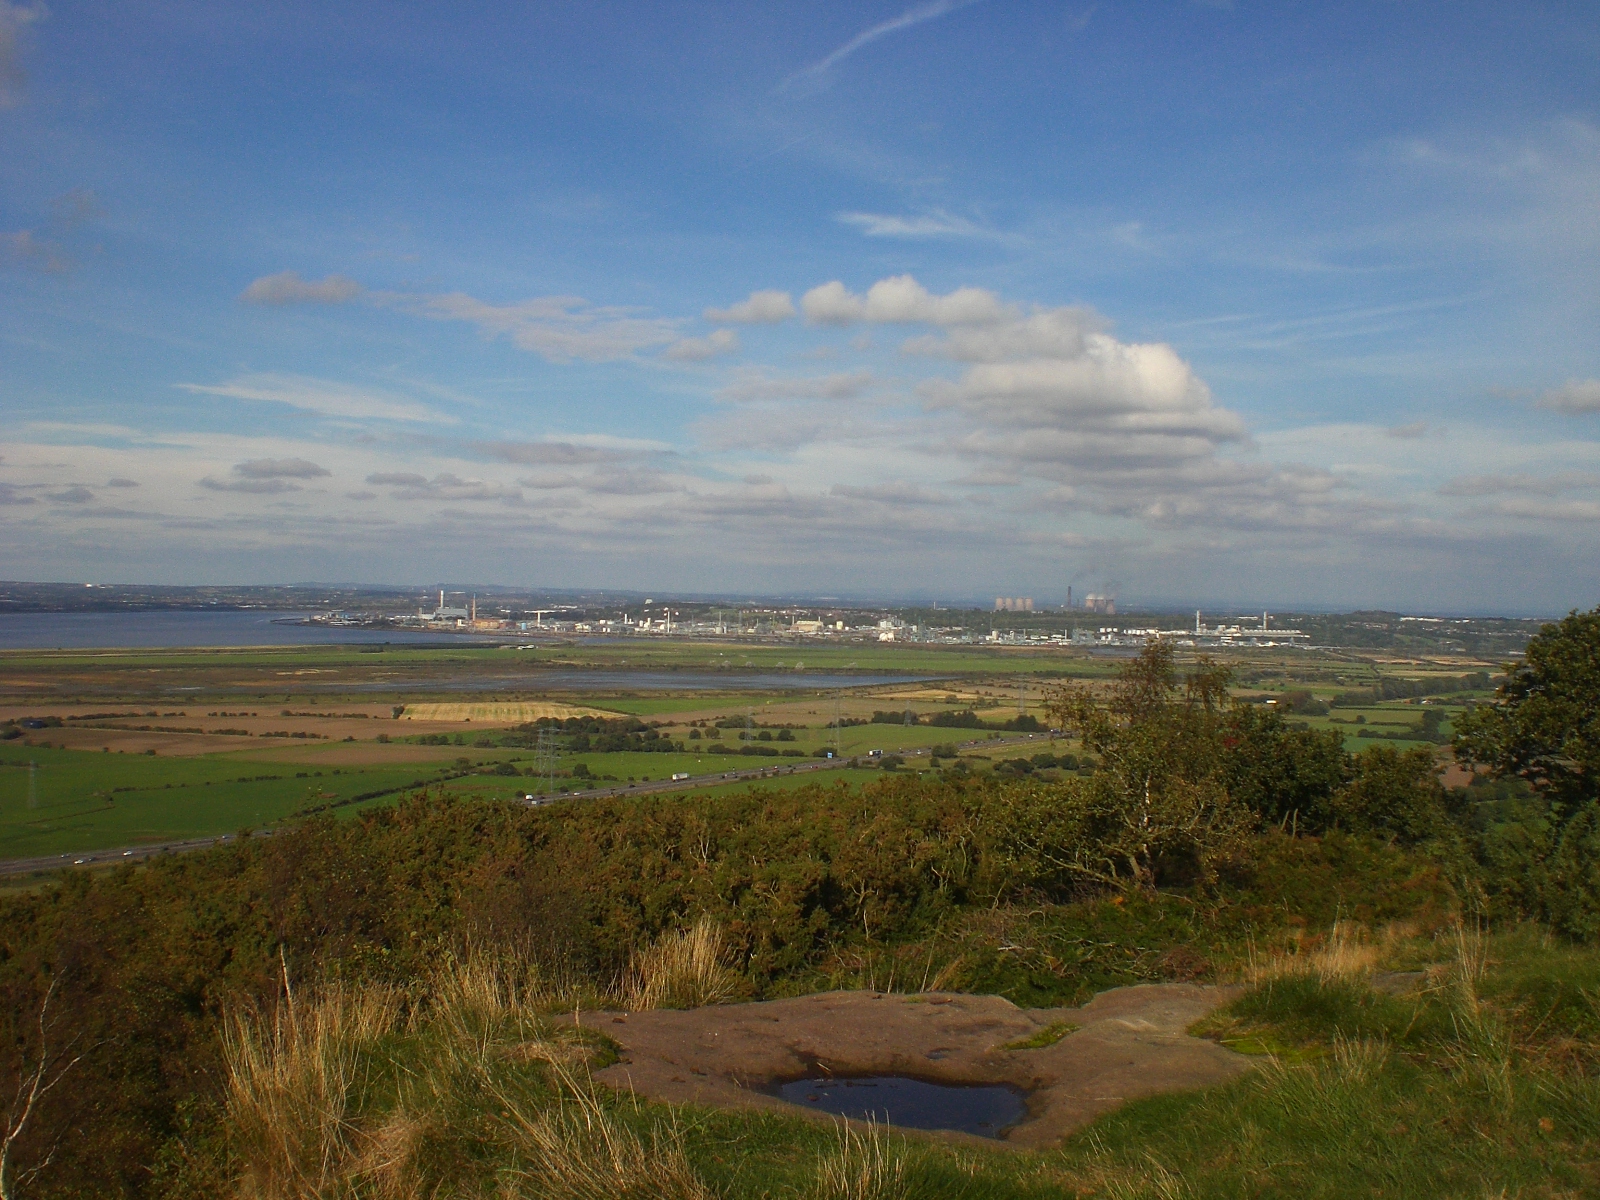 View towards Runcorn